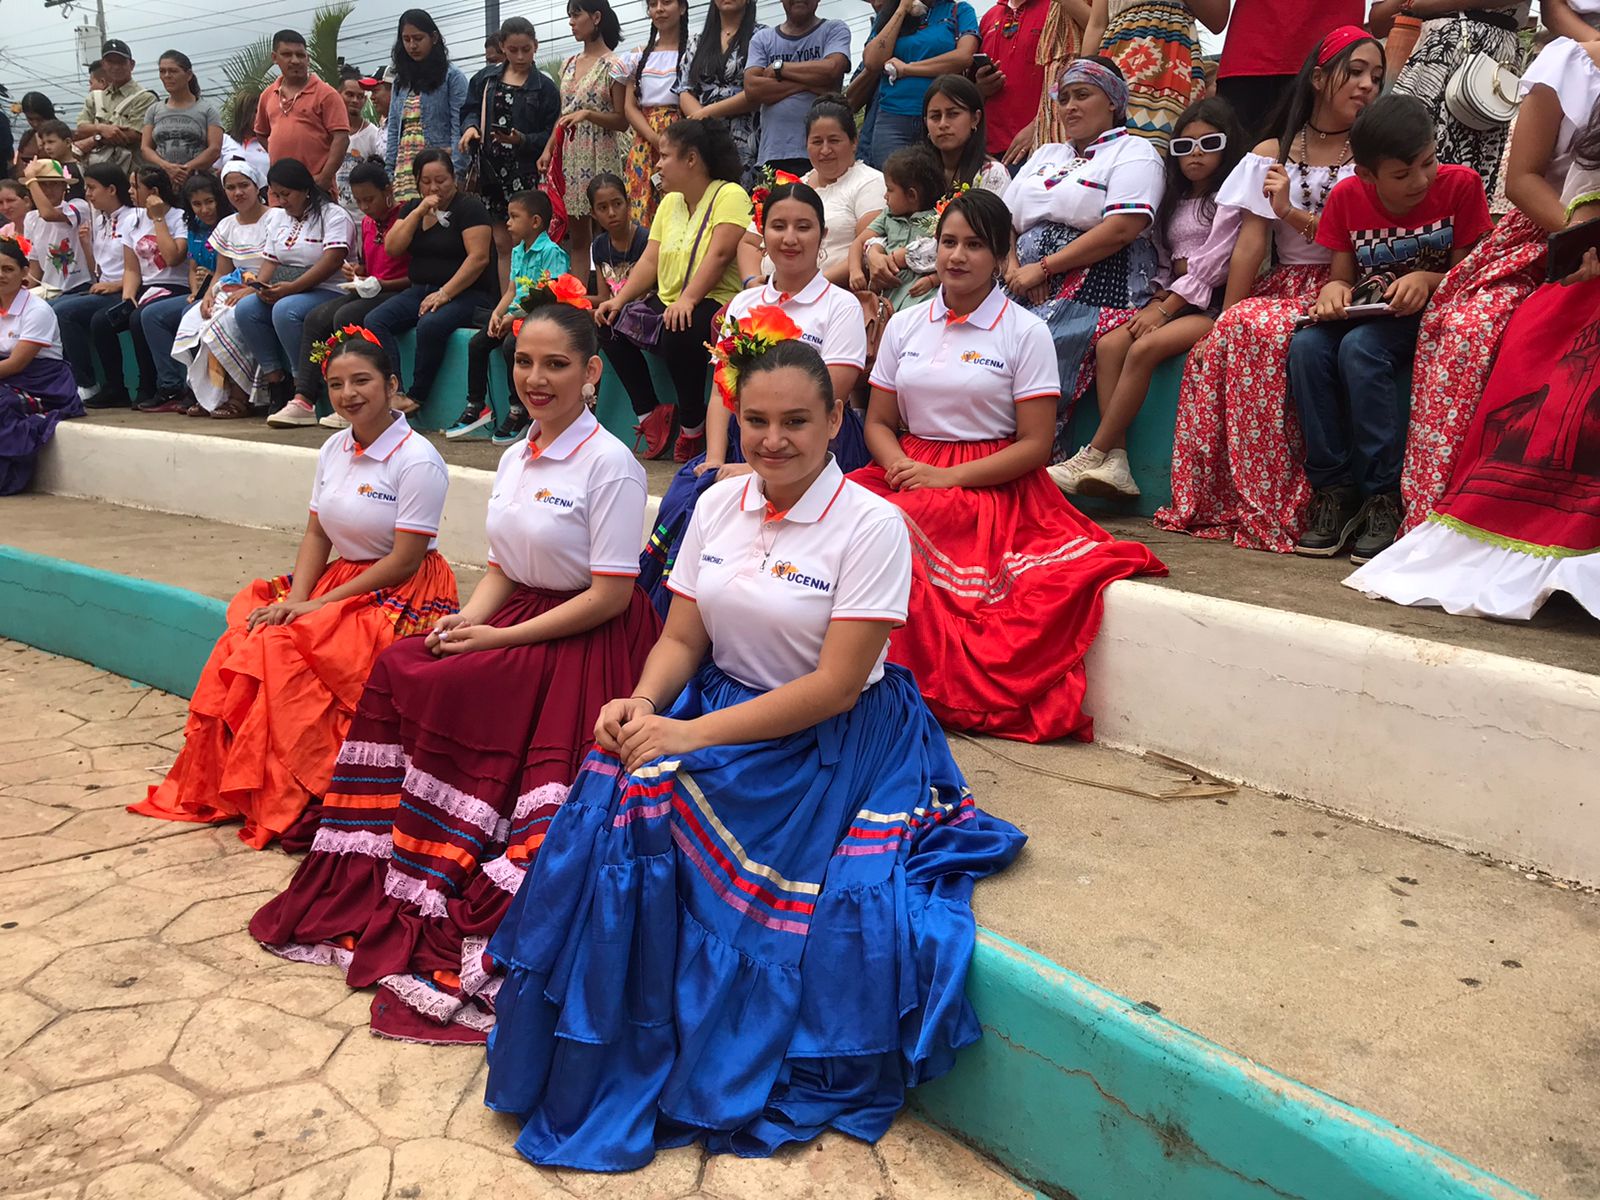 UCENM Santa Cruz de Yojoa celebra evento "Cultura de Nuestra Tierra 2023"